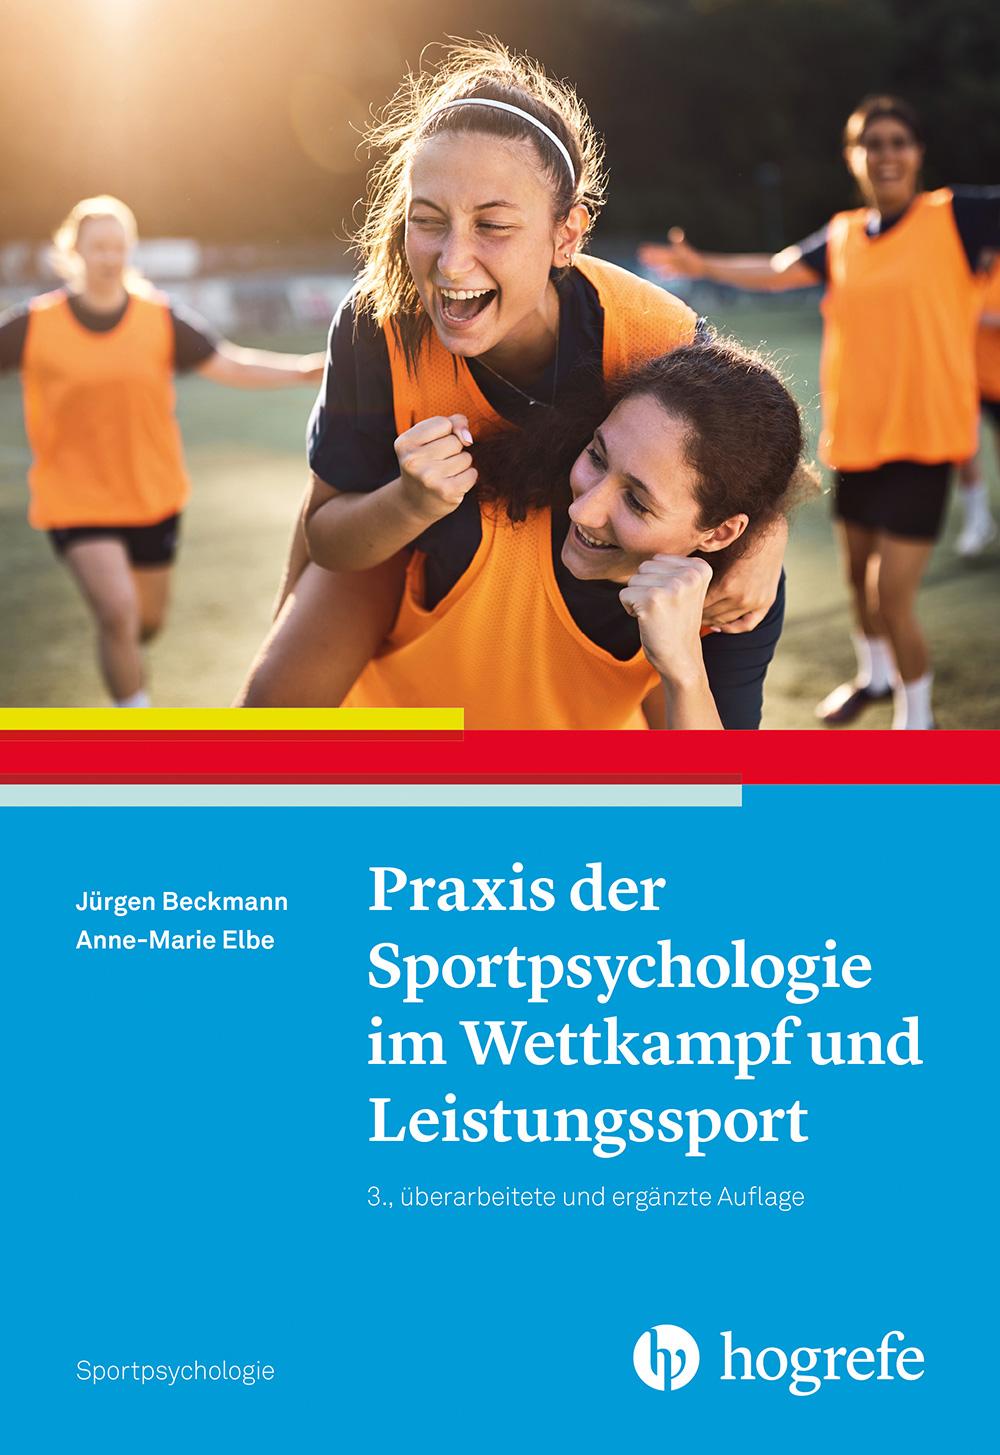 Carte Praxis der Sportpsychologie im Wettkampf und Leistungssport Anne-Marie Elbe